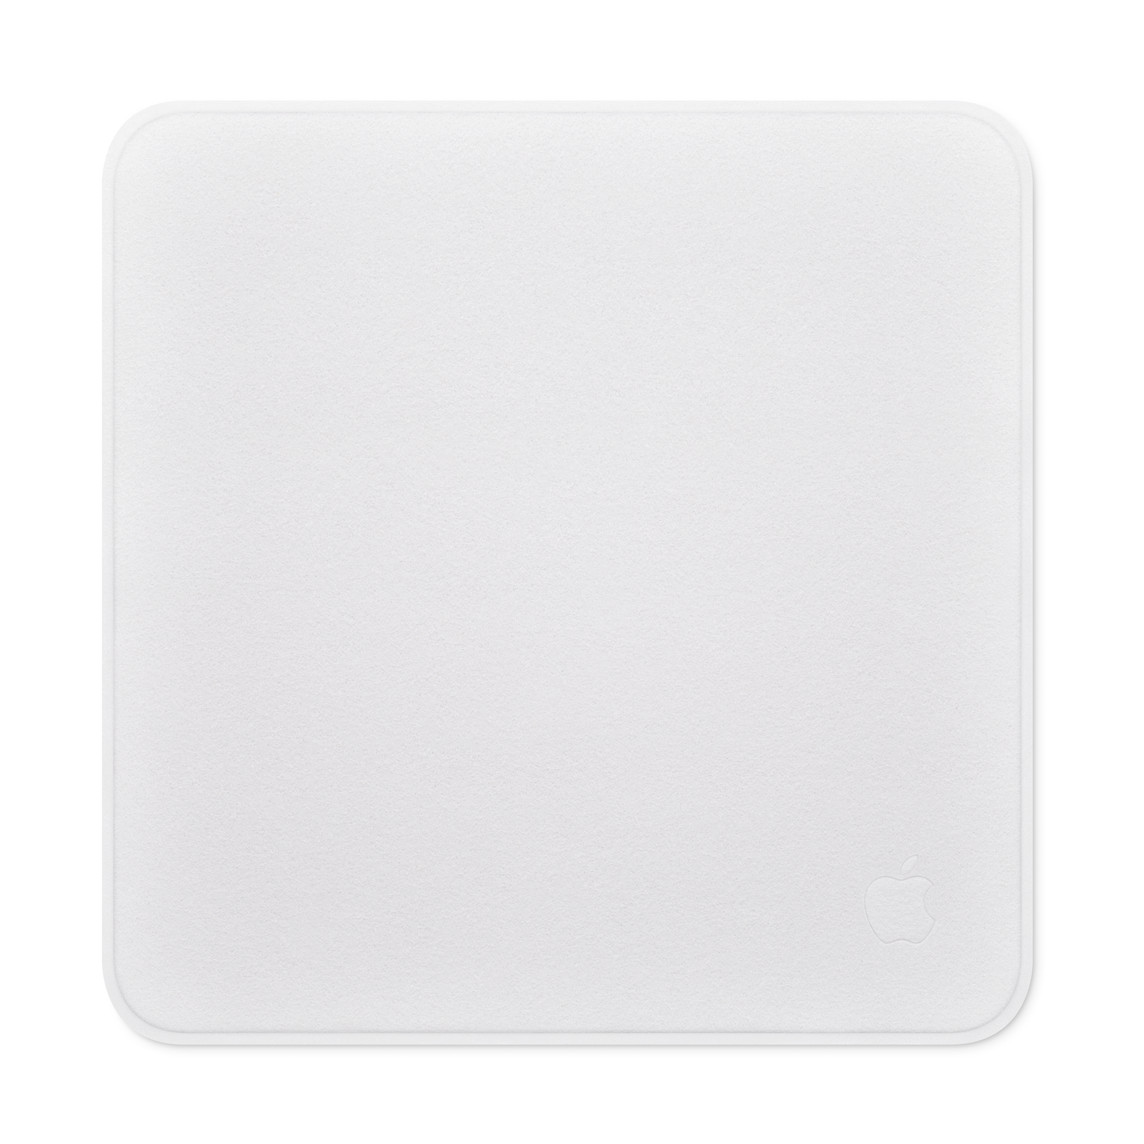 擦拭布可安全有效地清潔任何 Apple 顯示器，包括 nano-texture 玻璃。